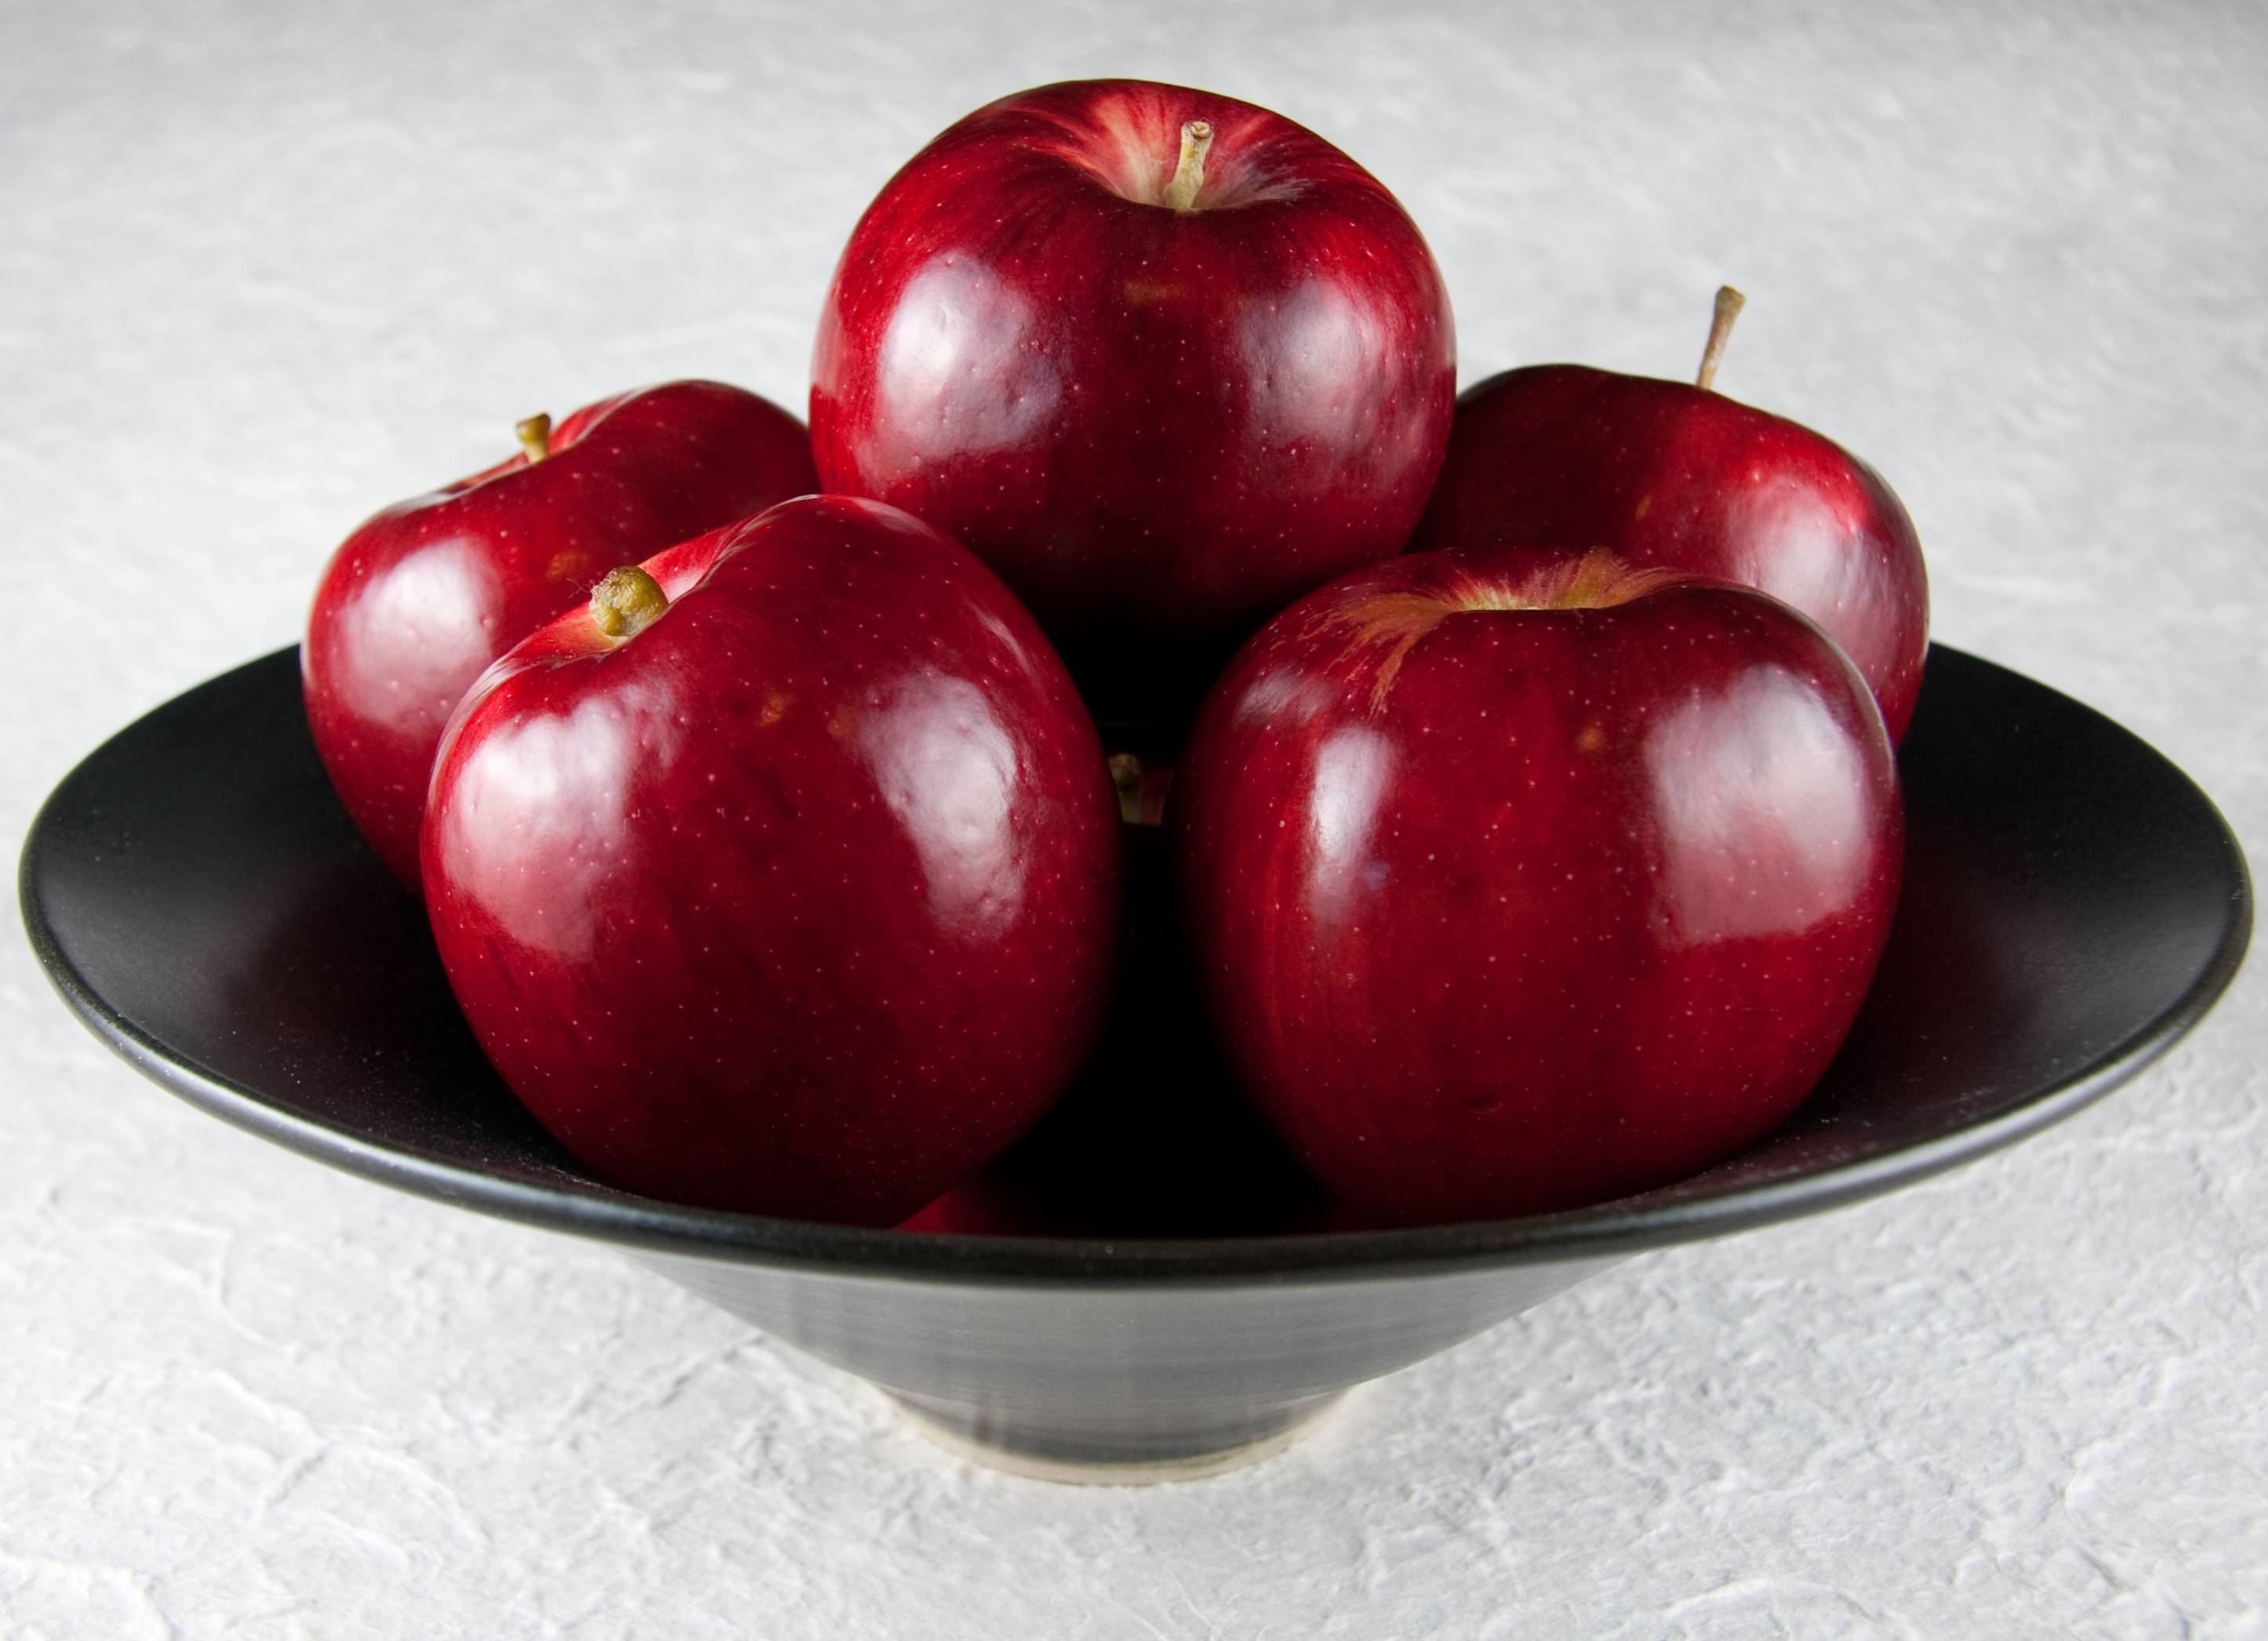 بررسی بهترین ویژگی های درمانی سیب